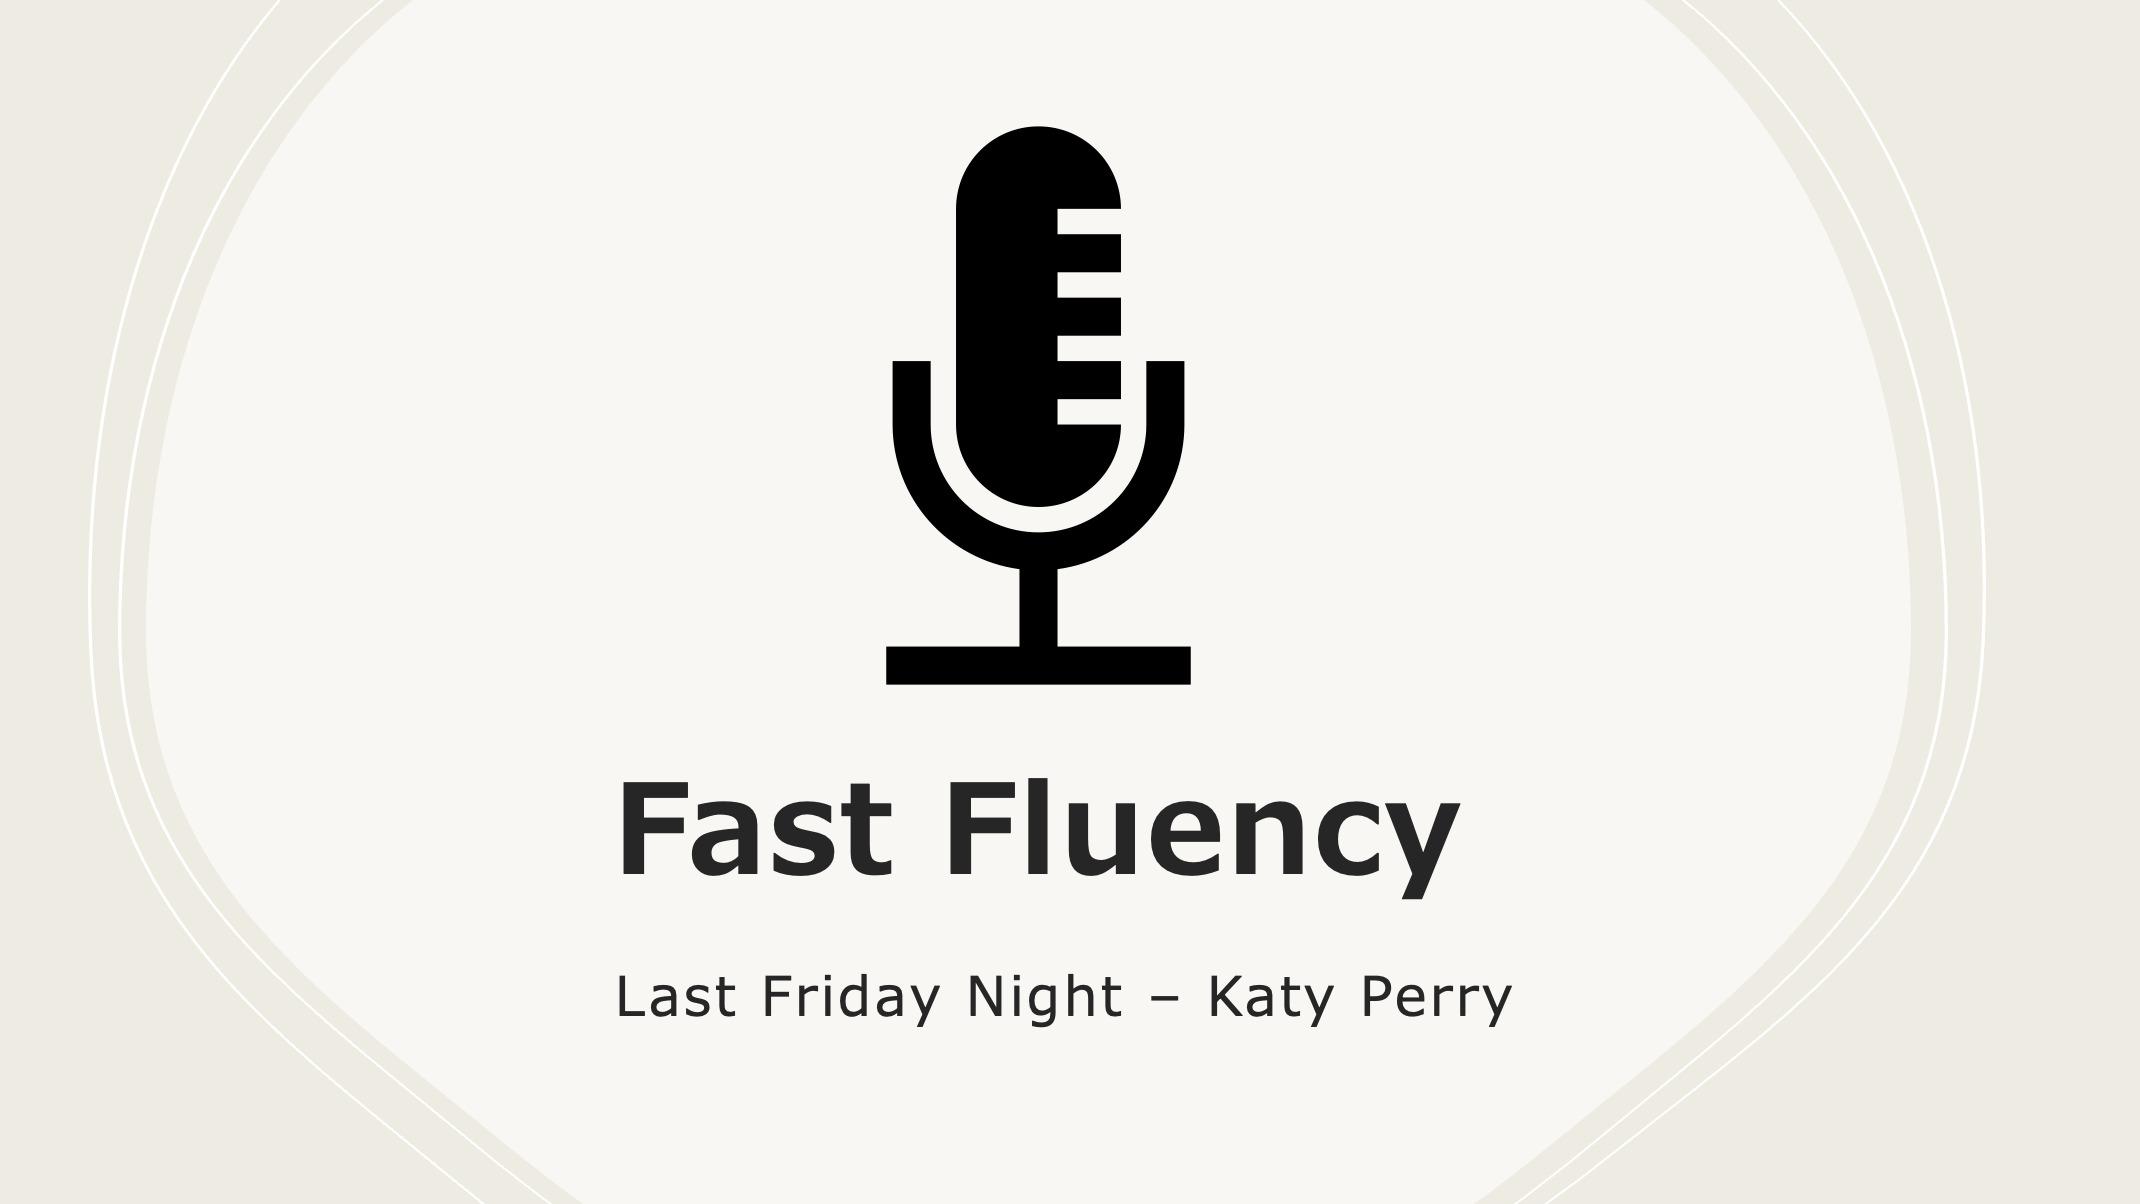 Fast Fluency: Last Friday Night